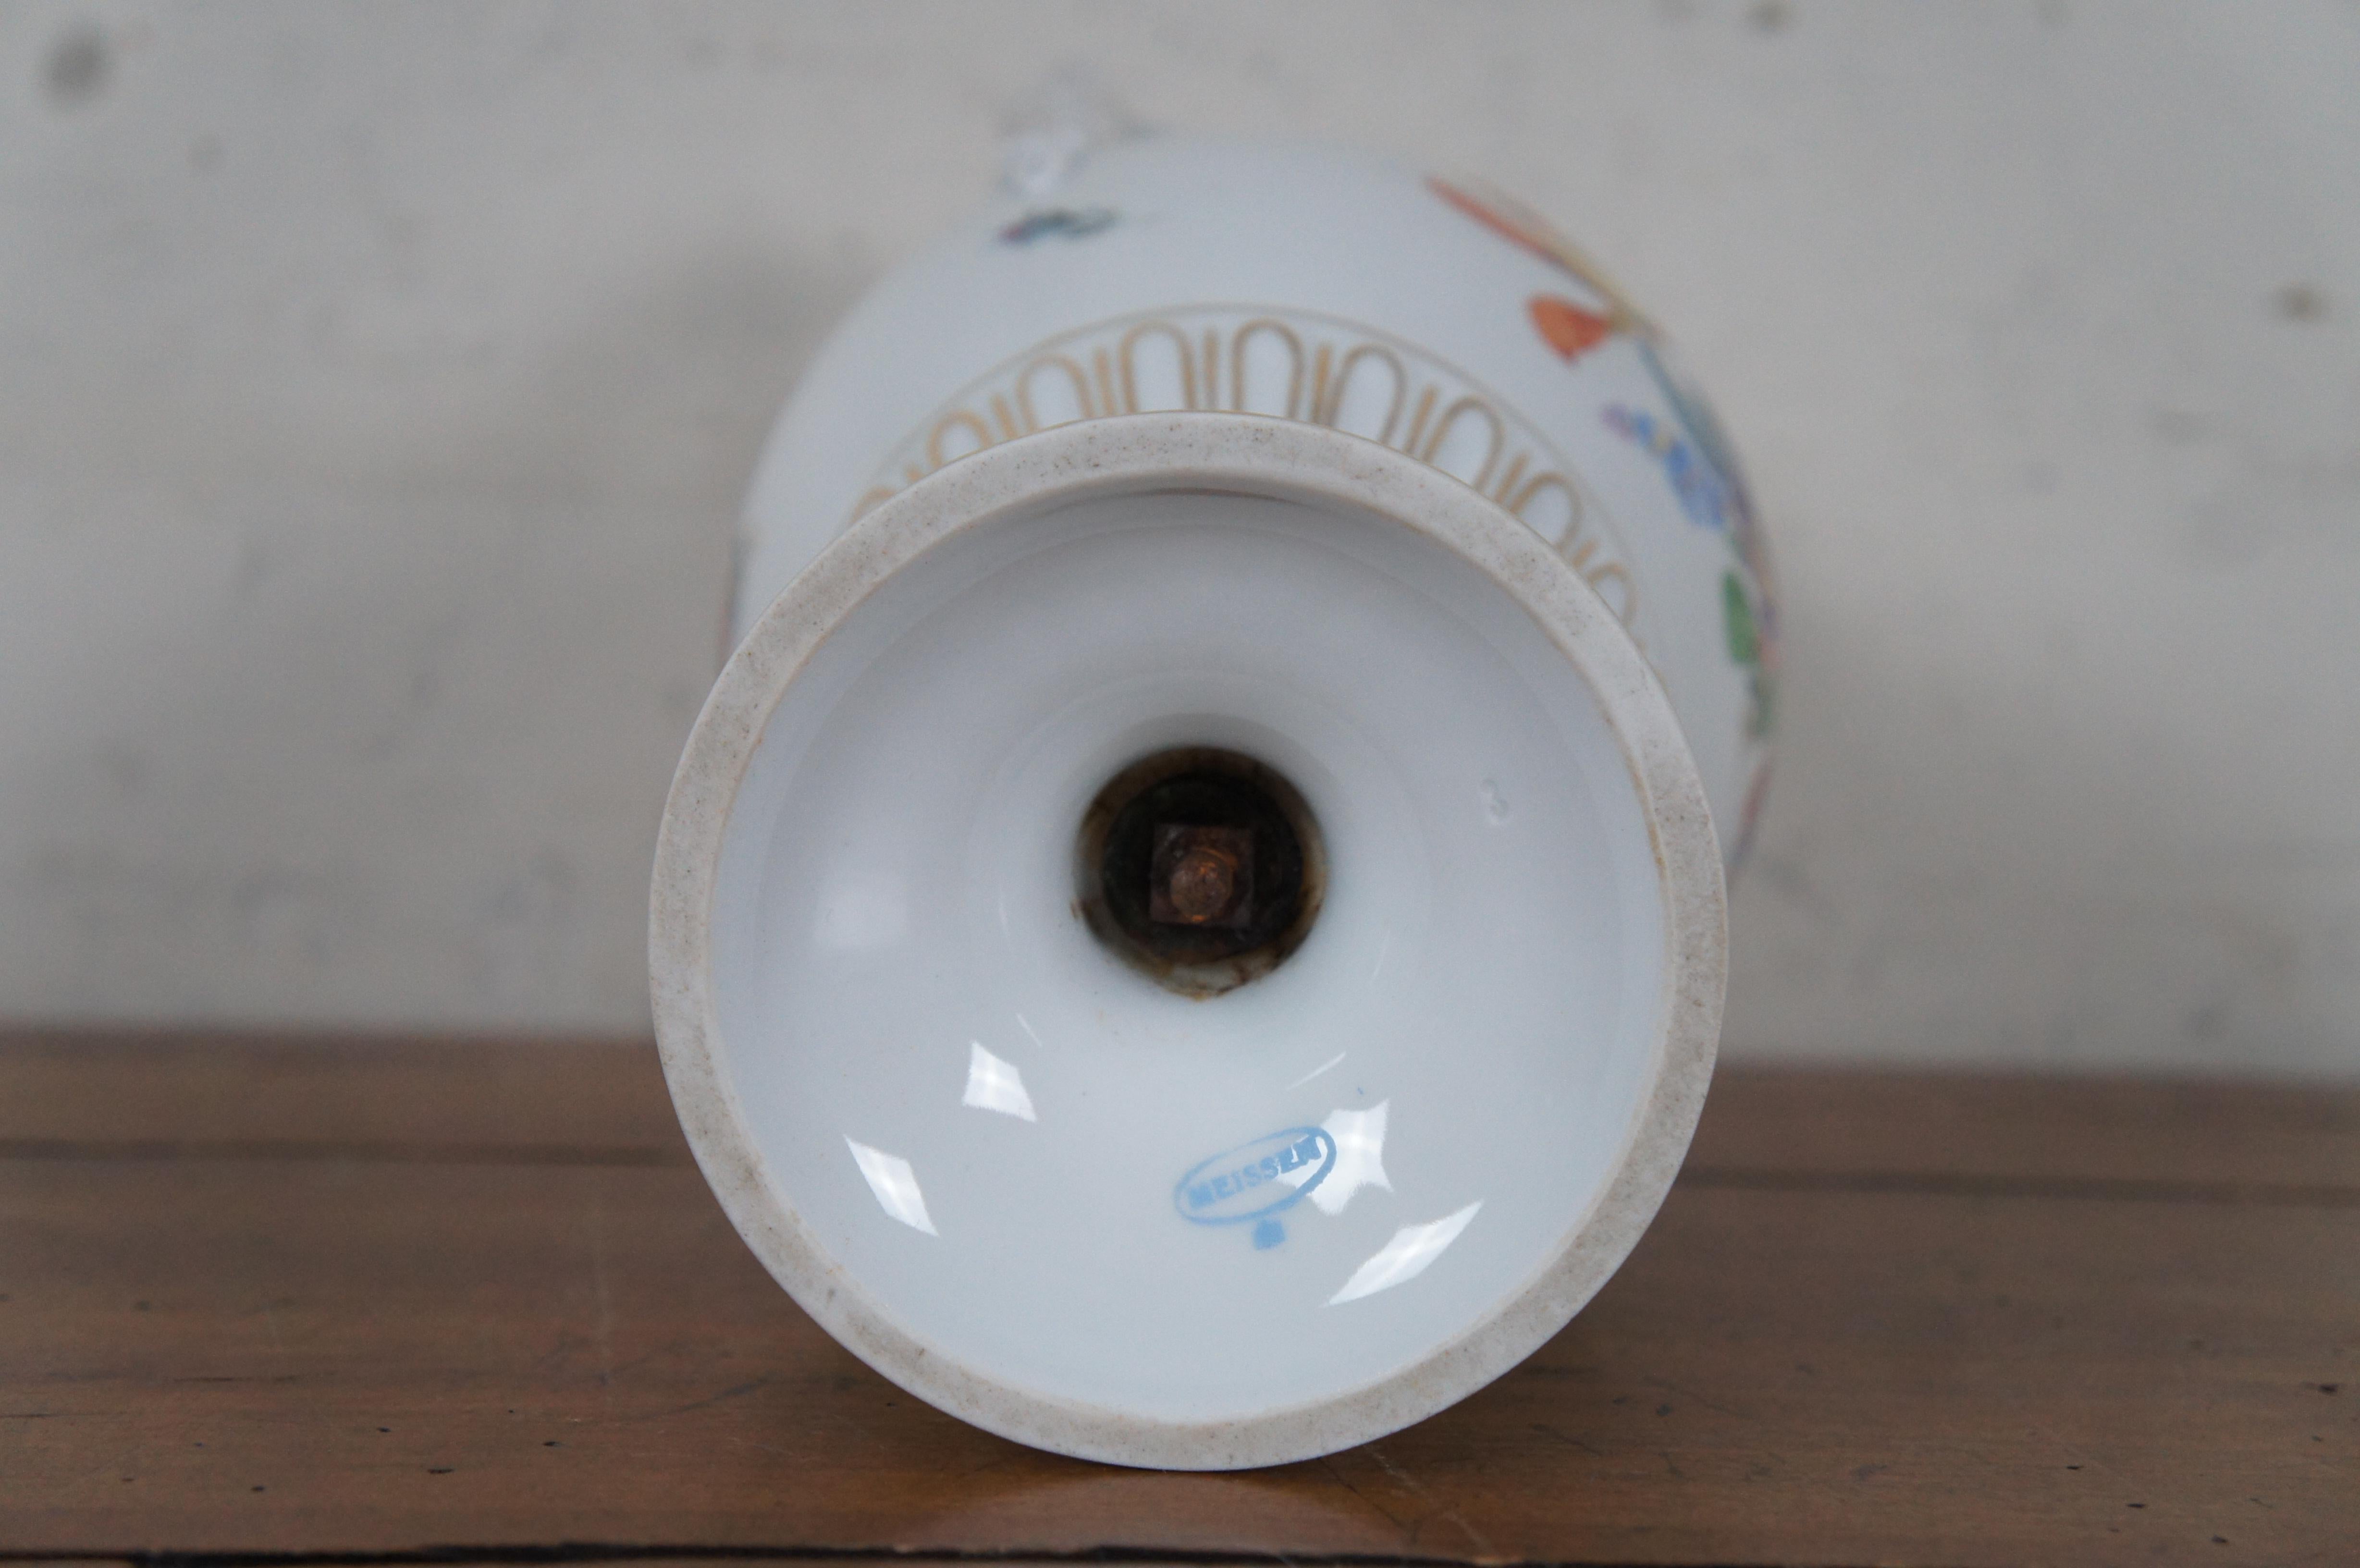 Antique German Meissen Dresden Porcelain Snake Handle Mantel Urn Vase 12